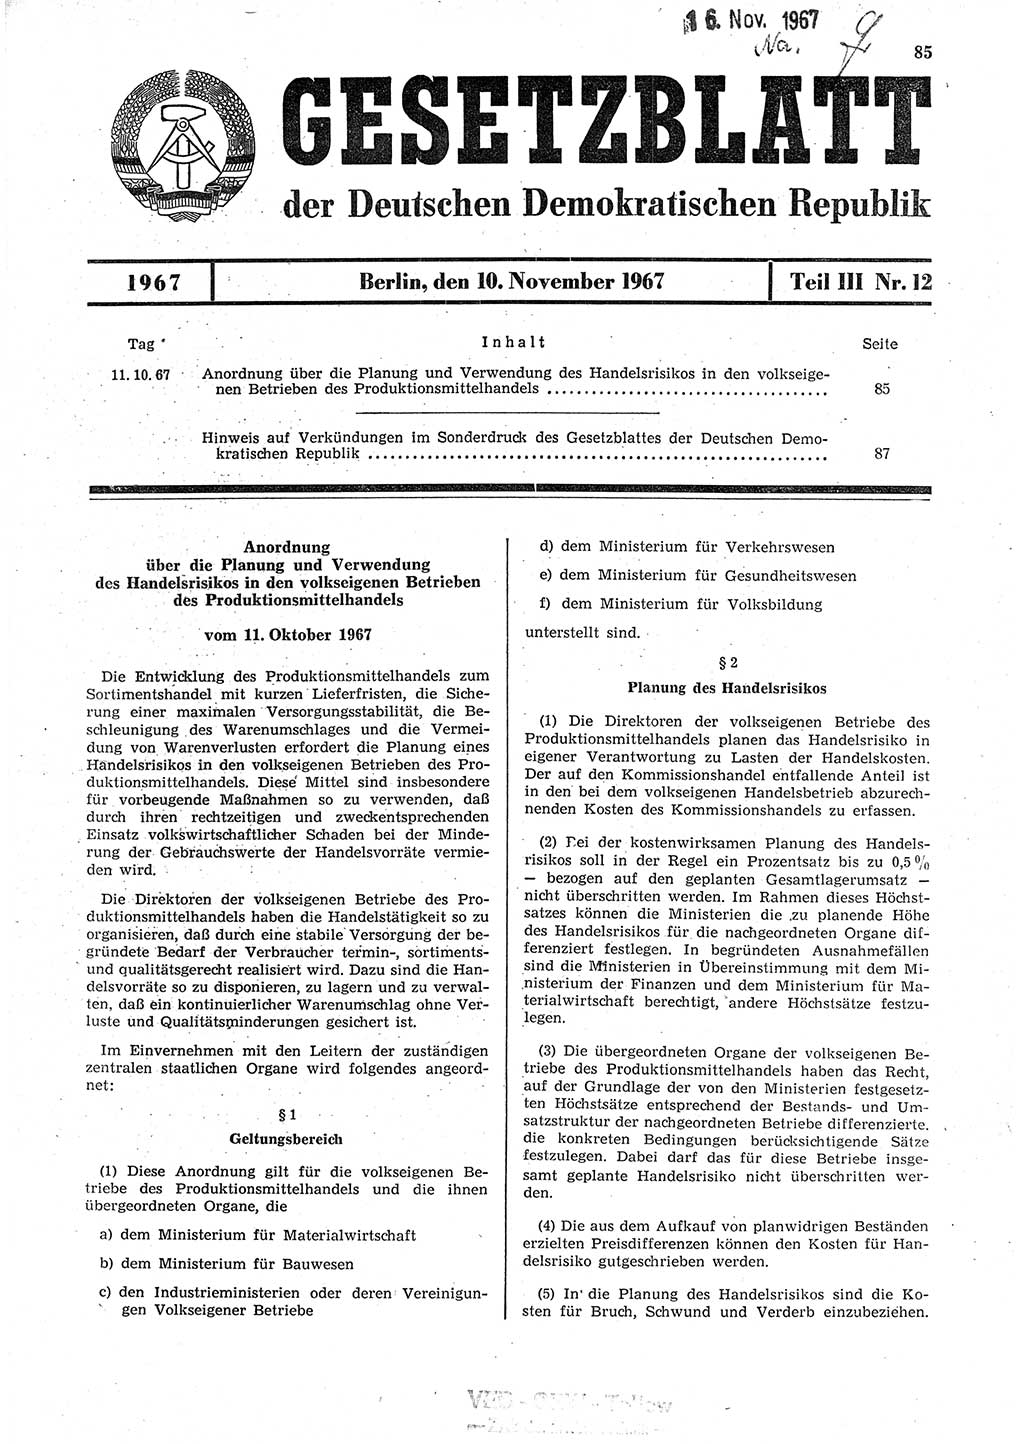 Gesetzblatt (GBl.) der Deutschen Demokratischen Republik (DDR) Teil ⅠⅠⅠ 1967, Seite 85 (GBl. DDR ⅠⅠⅠ 1967, S. 85)